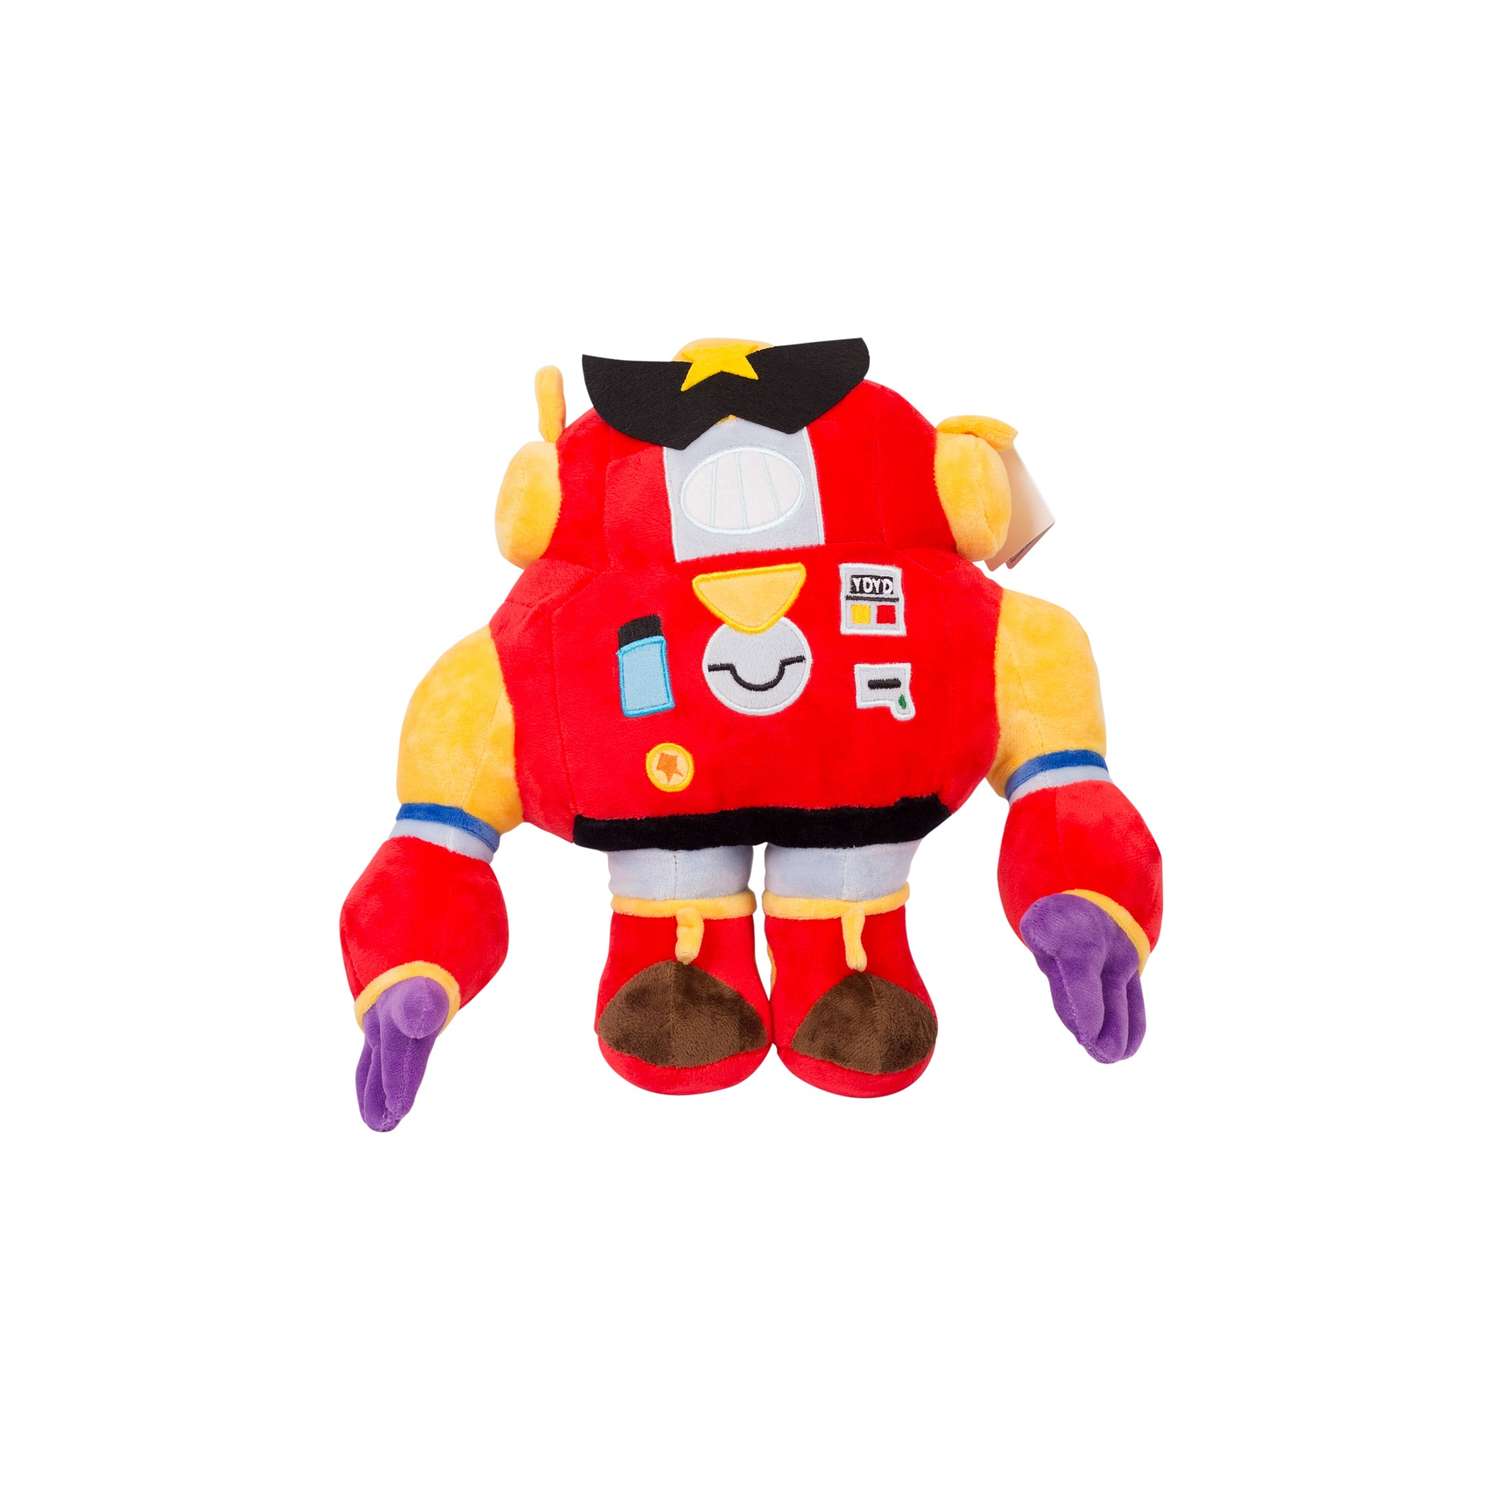 Мягкая игрушка Super01 робот Вольт из игры Бравл Старс - фото 2